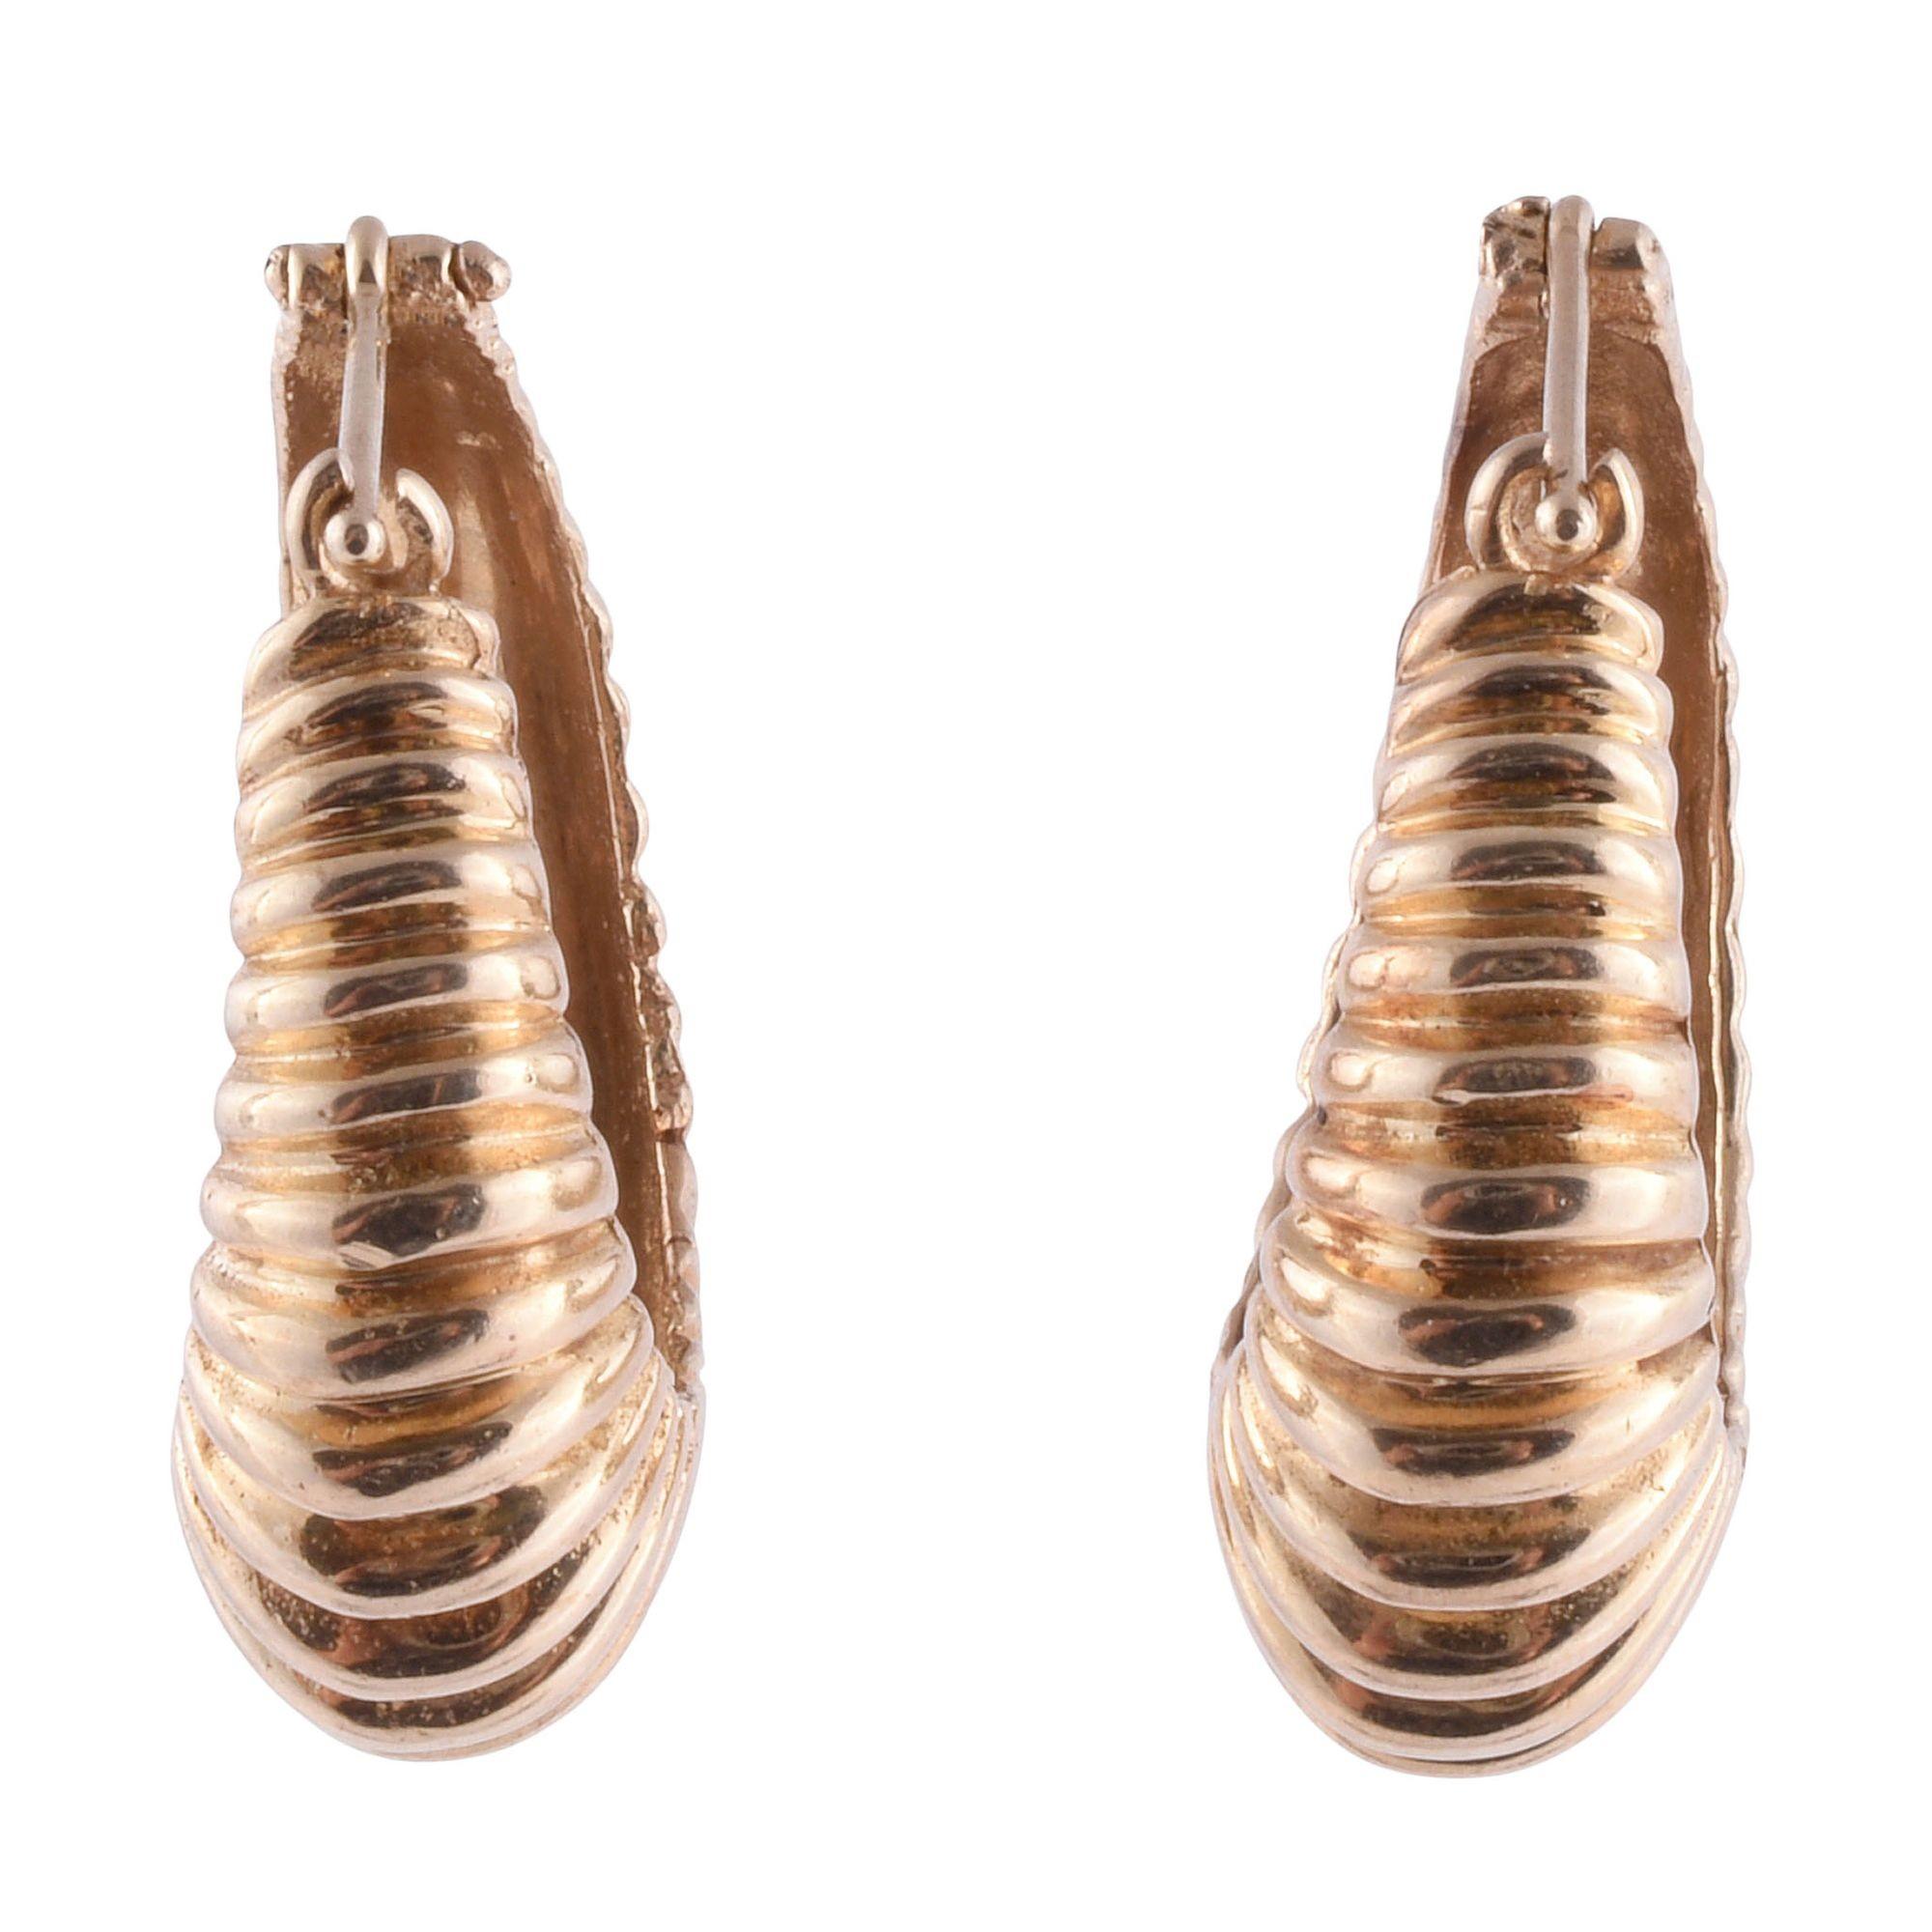 Vintage-Ohrringe mit gerippten Ringen, um 1970. Diese Vintage-Ohrringe in Form eines gerippten Reifs sind aus 14 Karat Gelbgold gefertigt. [KIMH 547]